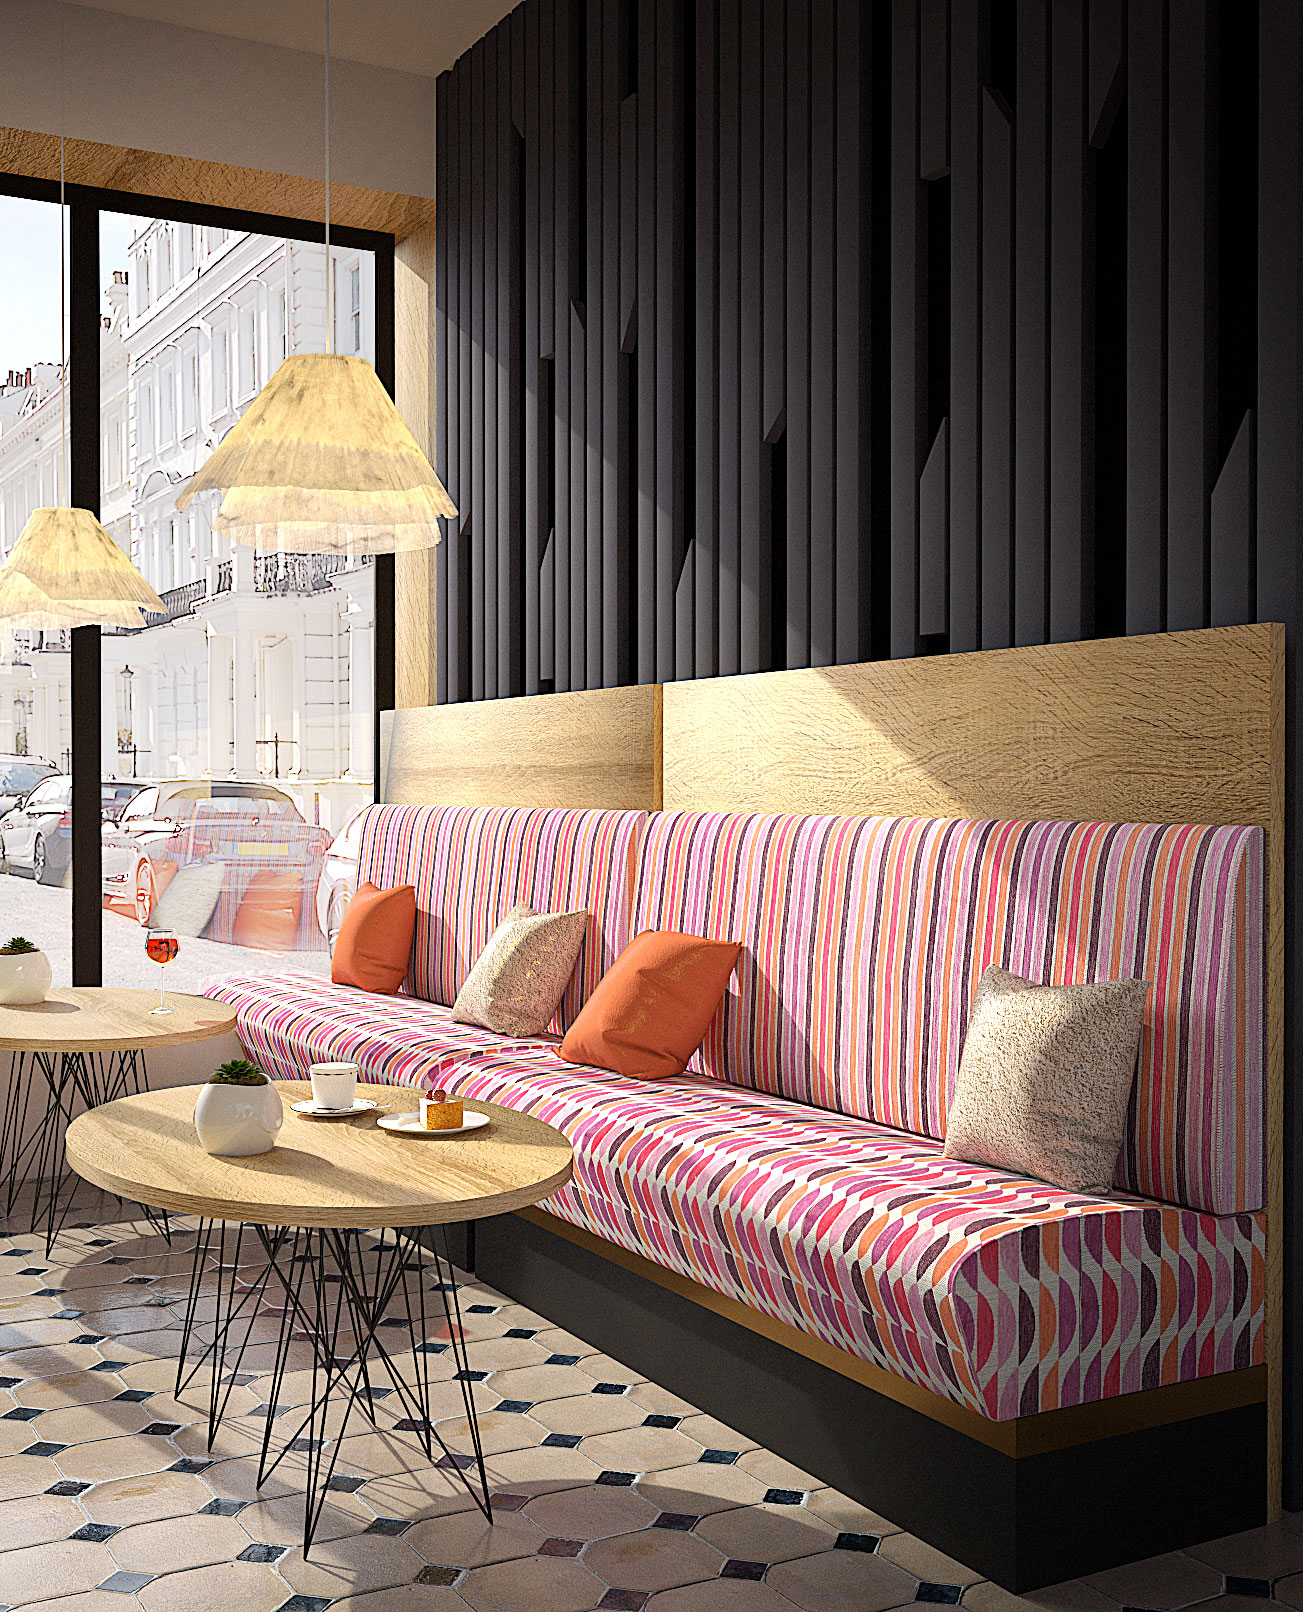 Polaszek Meble Nowoczesne wnętrze kawiarni z pasiastą sofą marki Meble Chojnice, wzorzystą podłogą i widokiem na ulicę. Chojnice